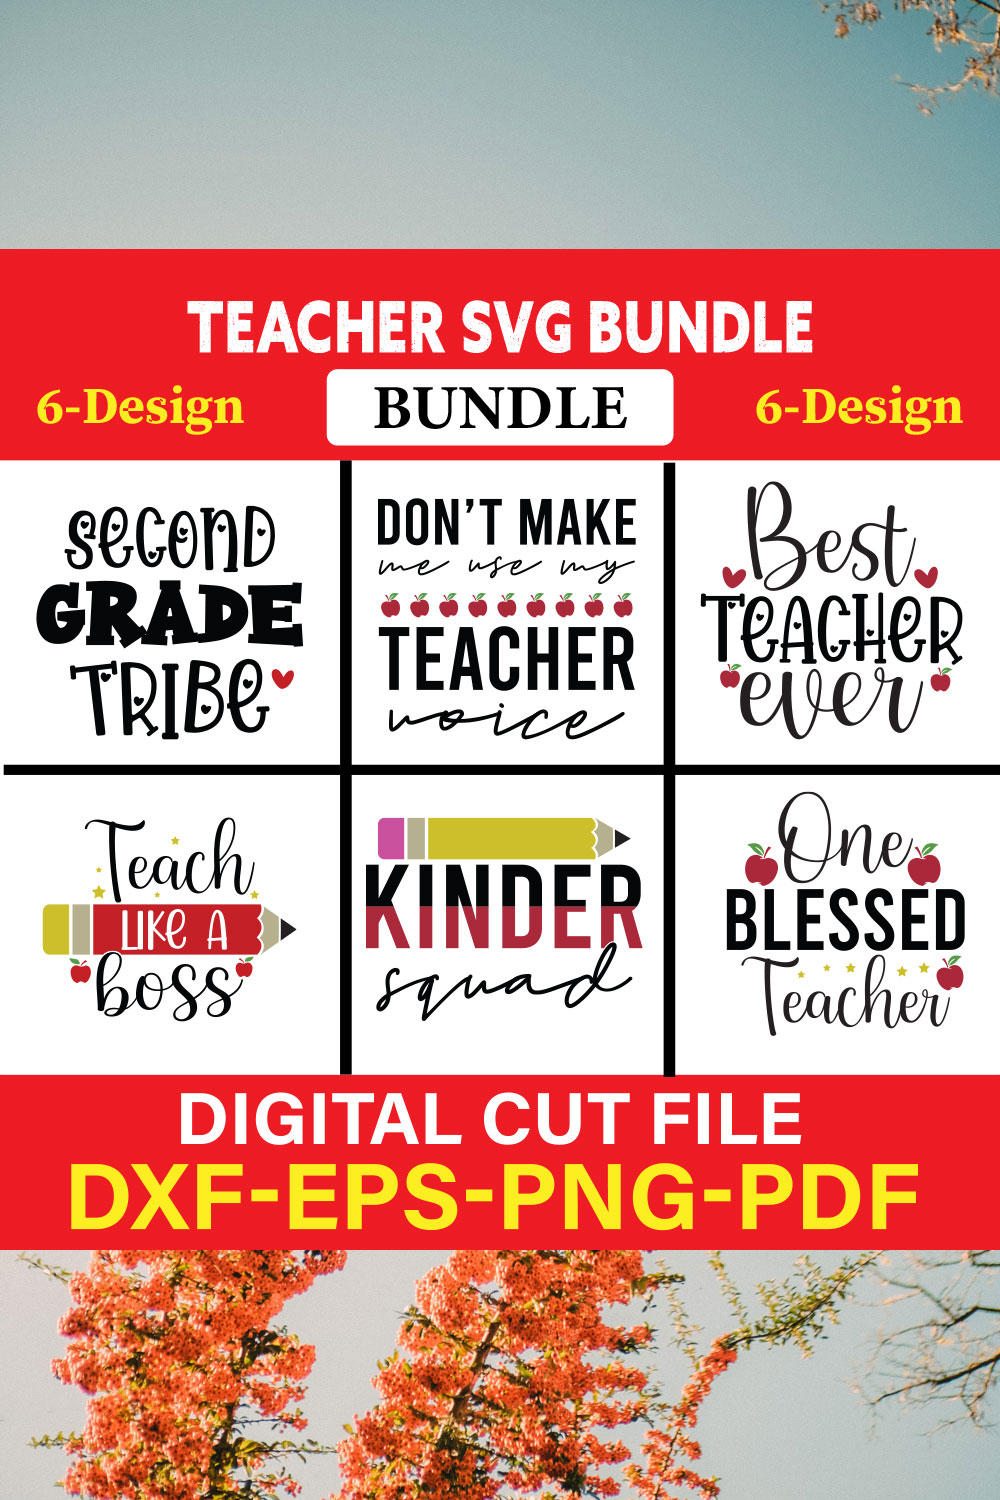 Teacher T-shirt Design Bundle Vol-2 pinterest preview image.